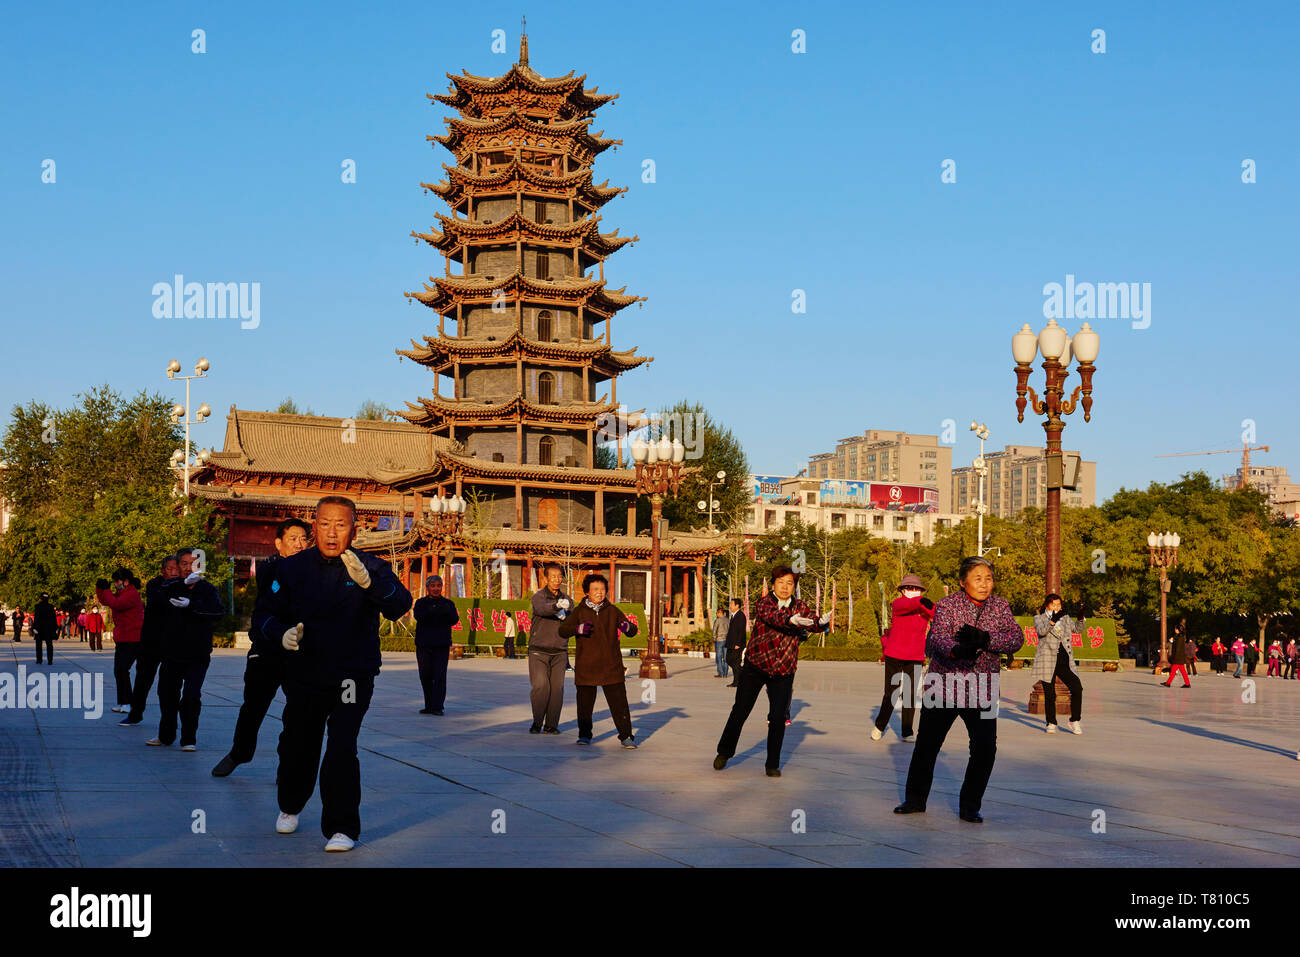 Esercizi del mattino davanti alla pagoda in legno sulla piazza principale, Zhangye, provincia di Gansu, Cina e Asia Foto Stock